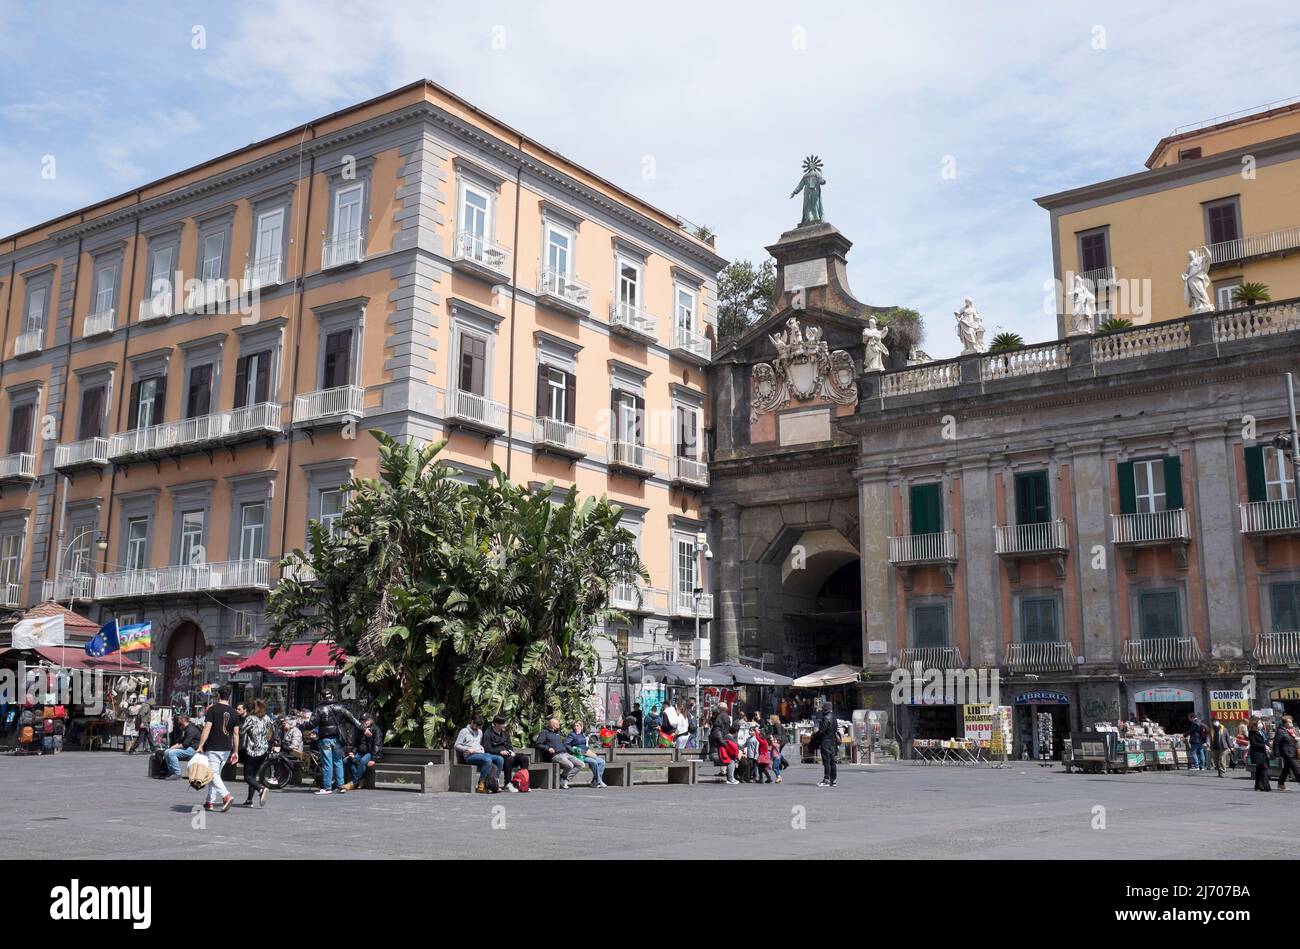 Piazza Dante Naples Italy Stock Photo